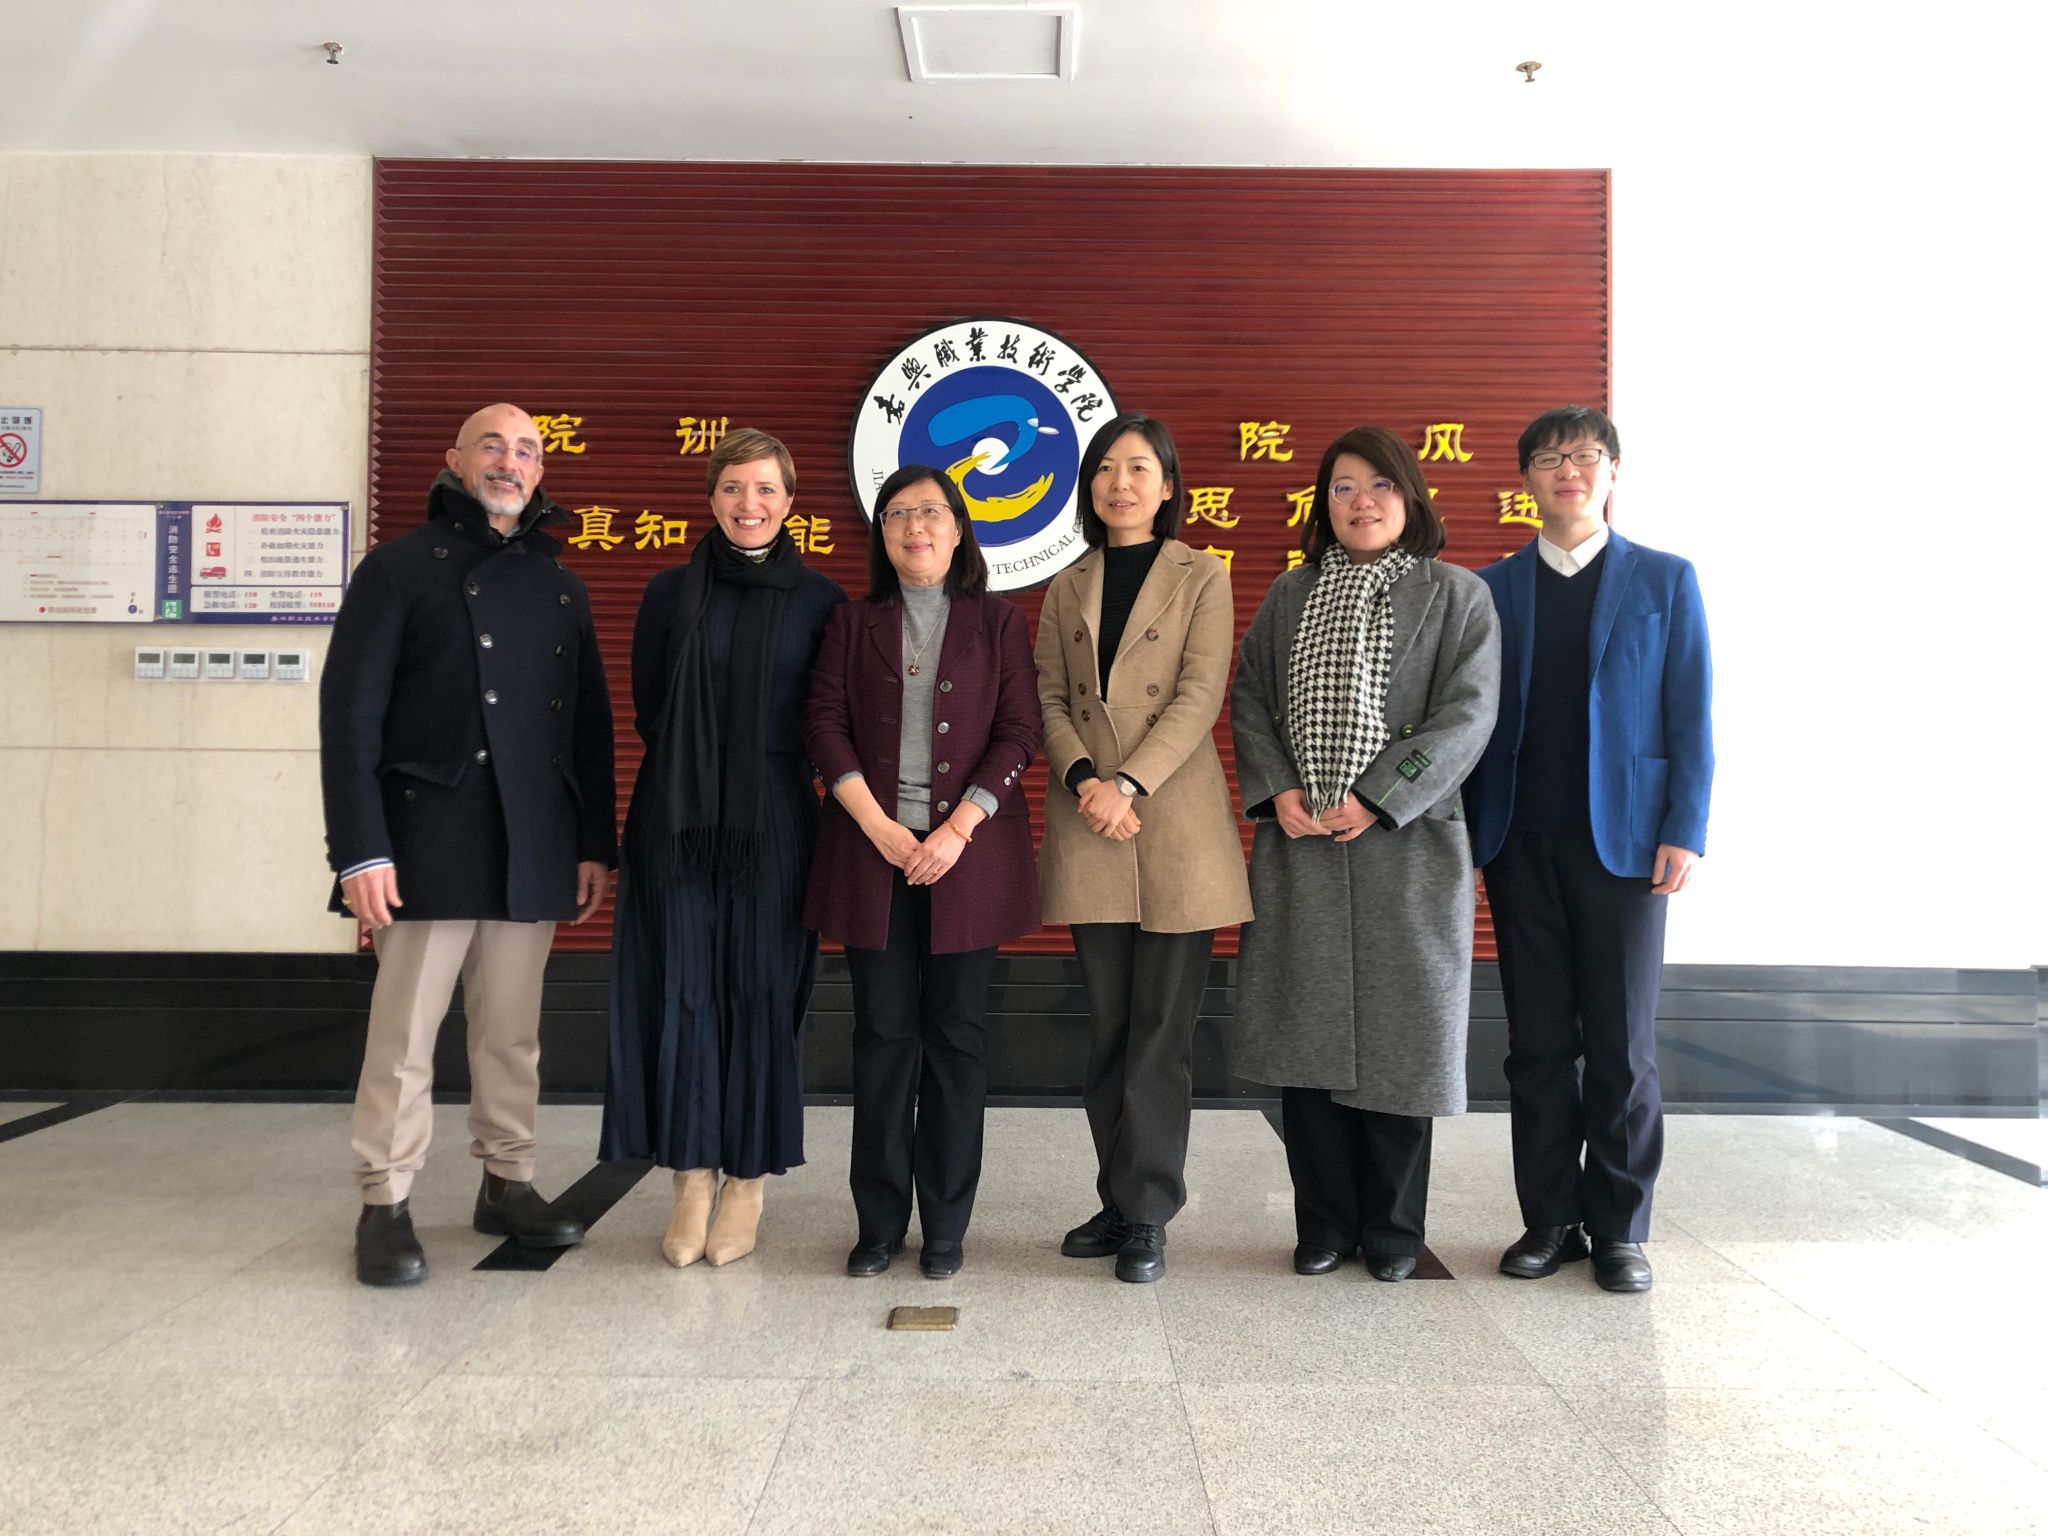 IUAD delegation visits JXVTC